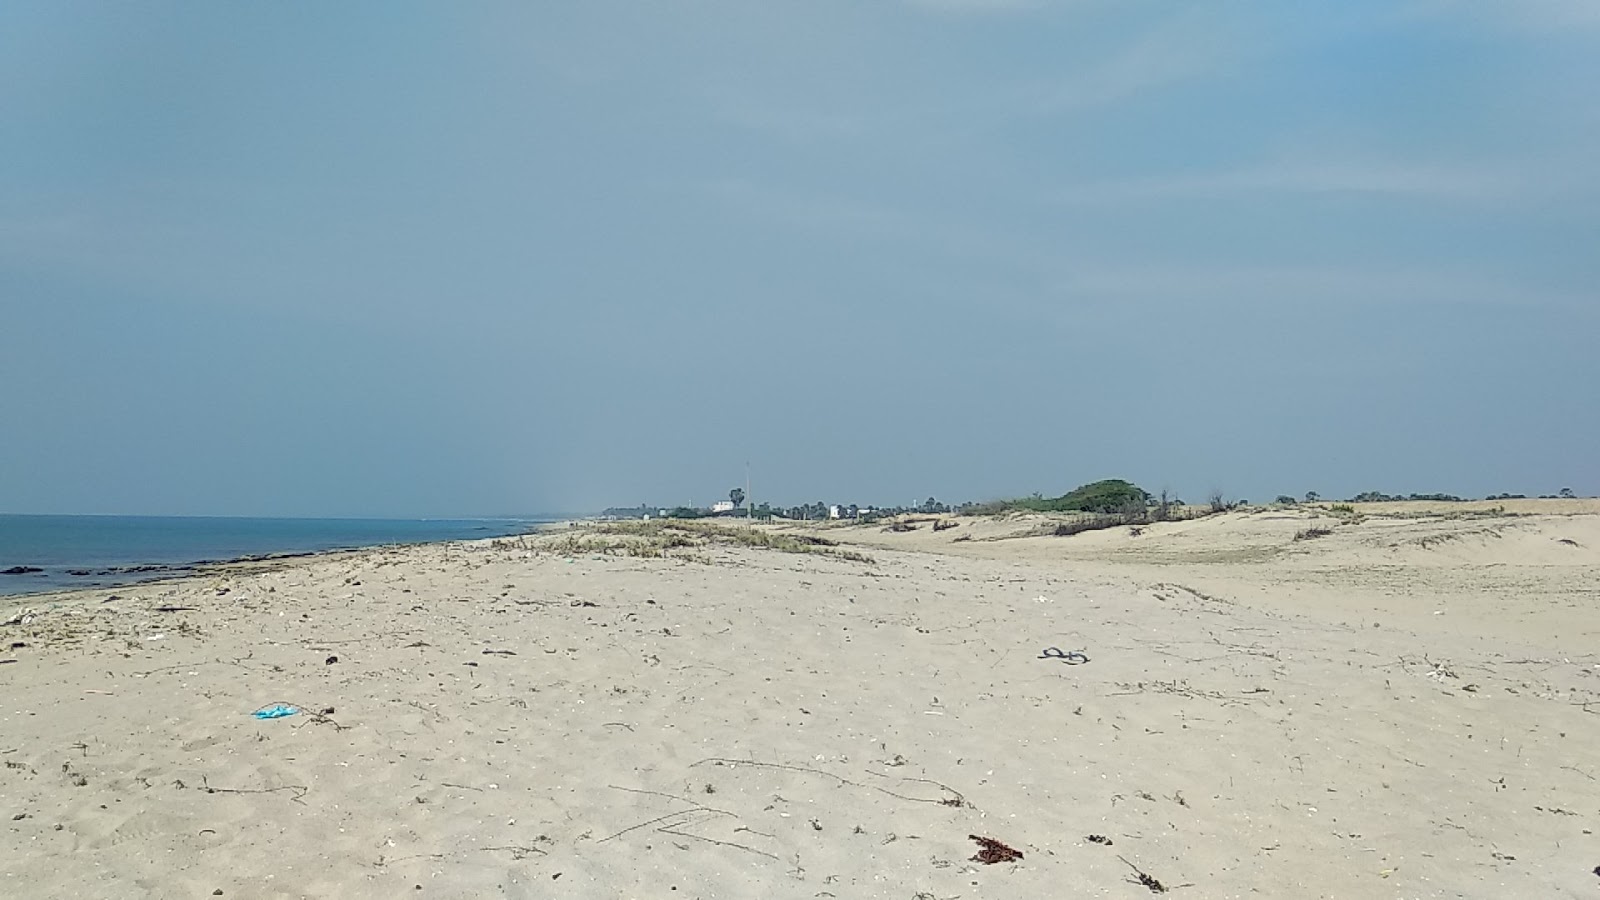 Manankudi Beach'in fotoğrafı parlak kum yüzey ile